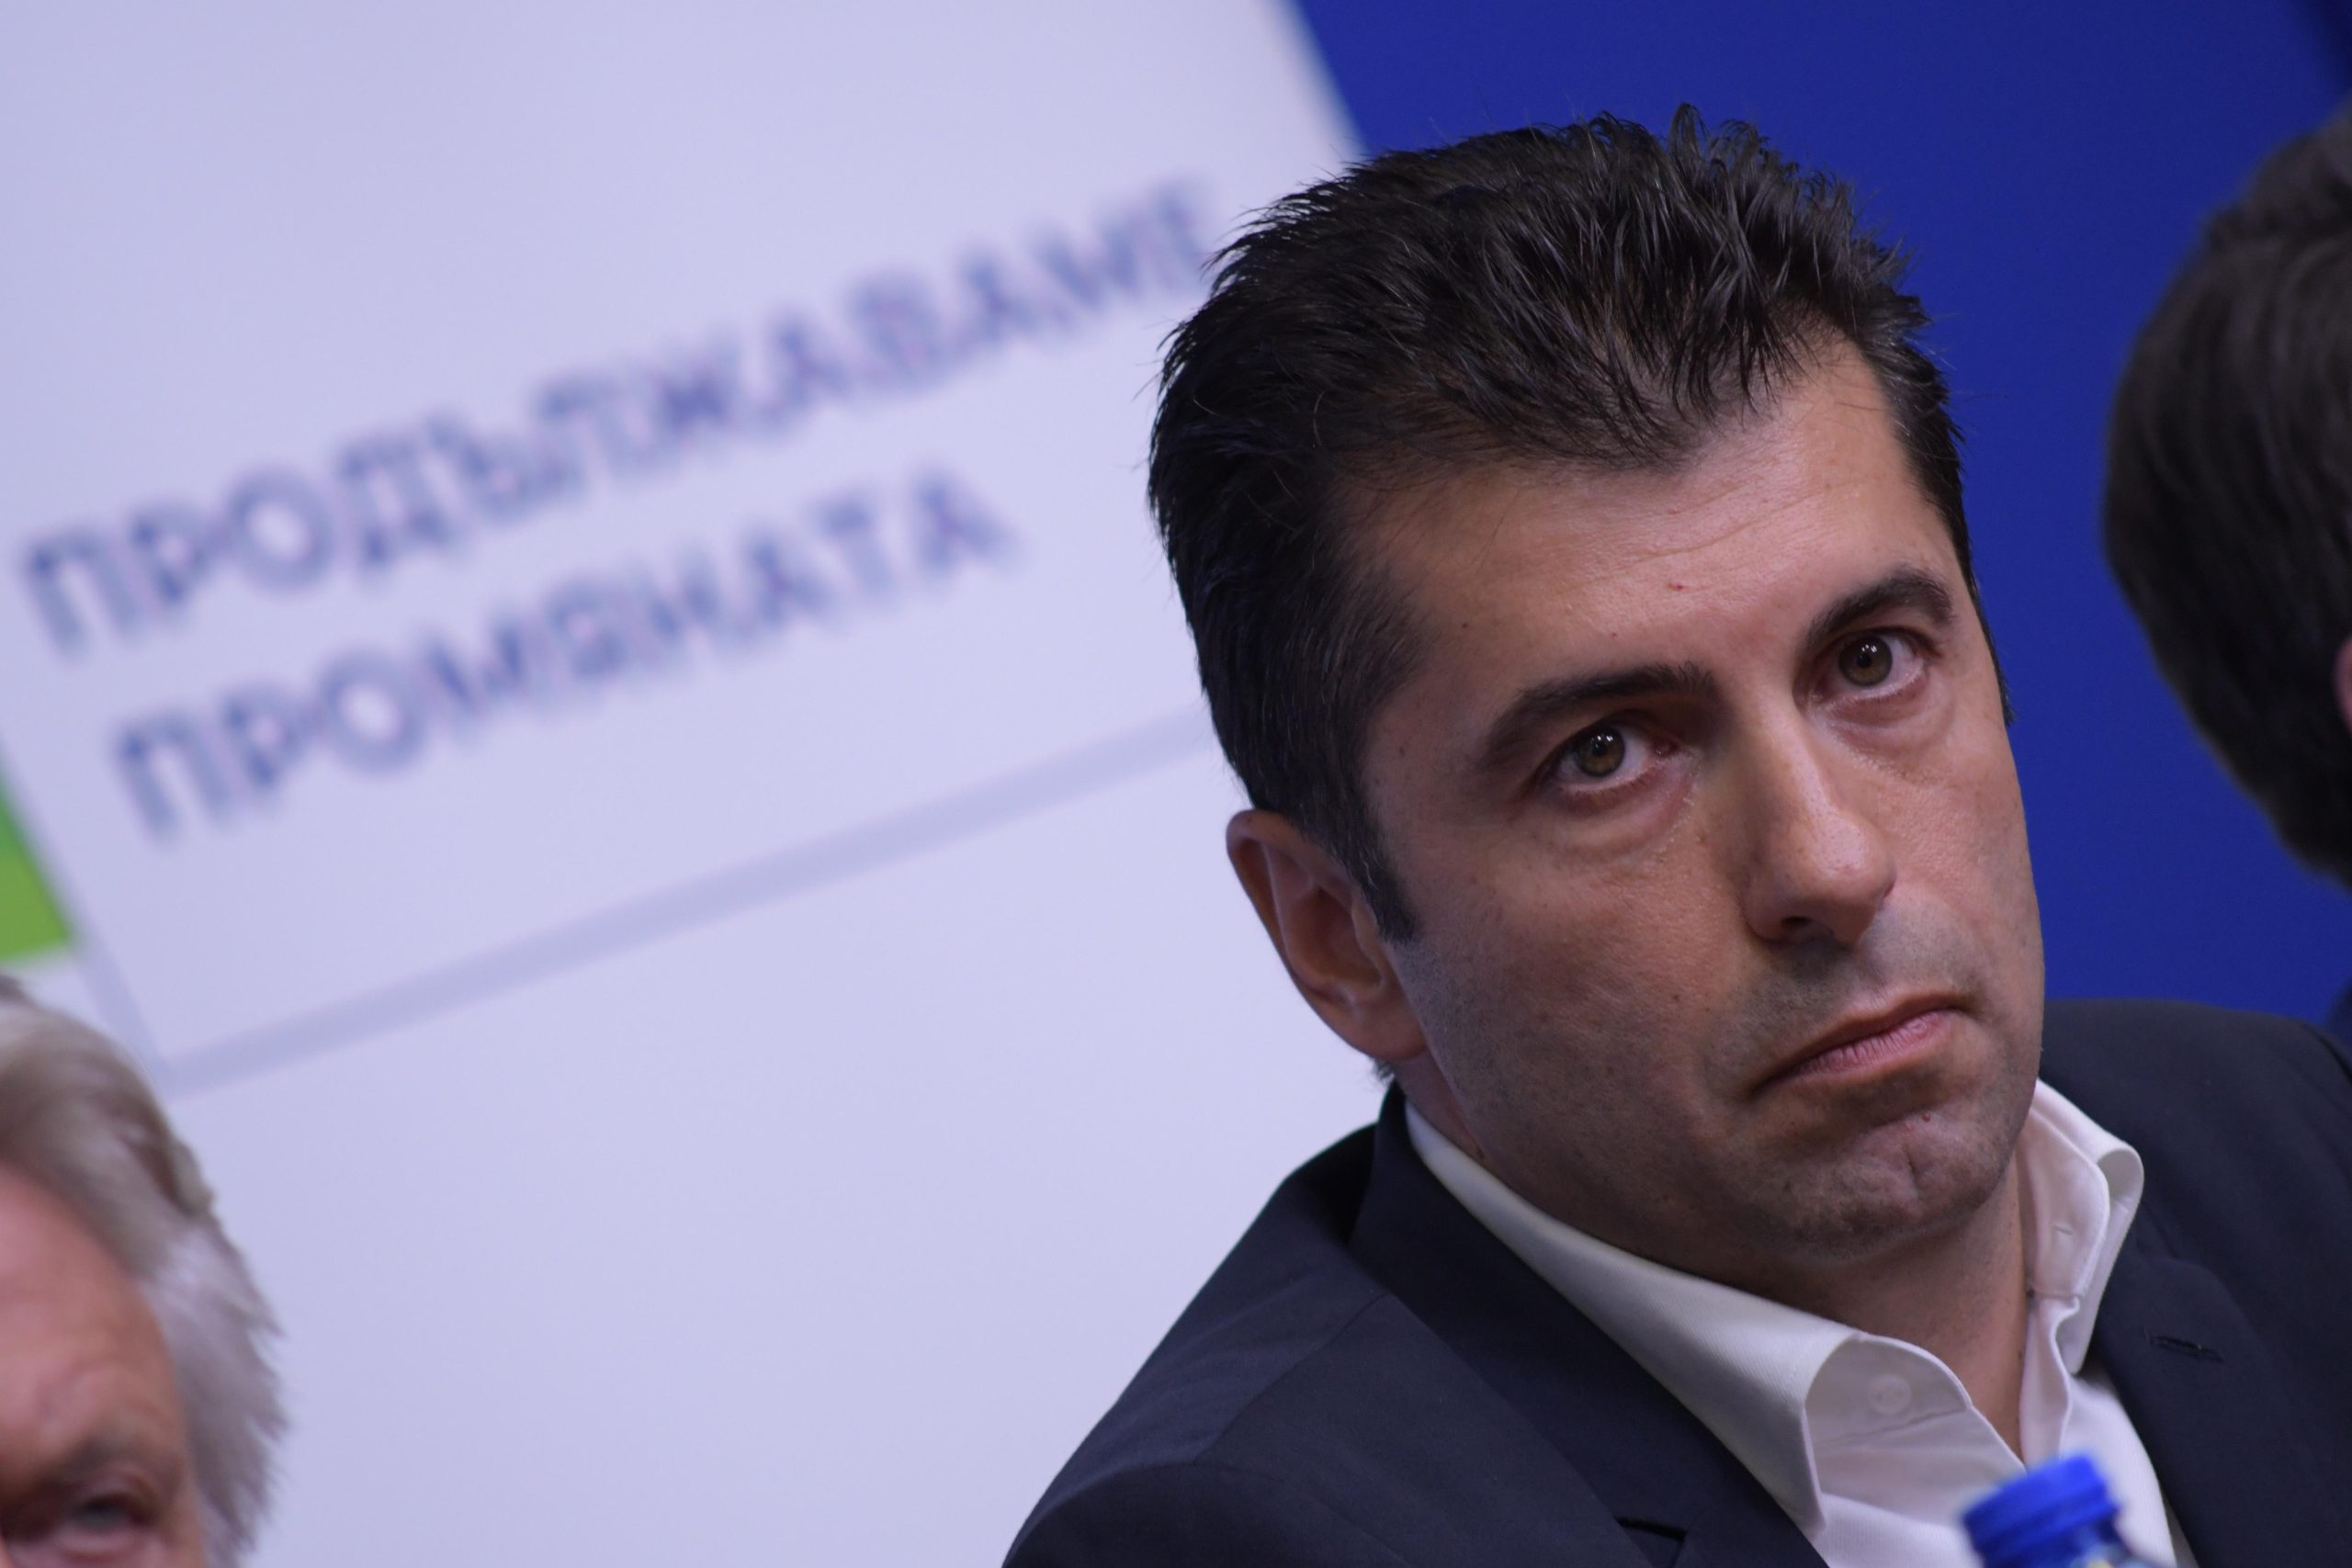 Българският представител в Европейския парламент и съпредседател на ВМРО Ангел